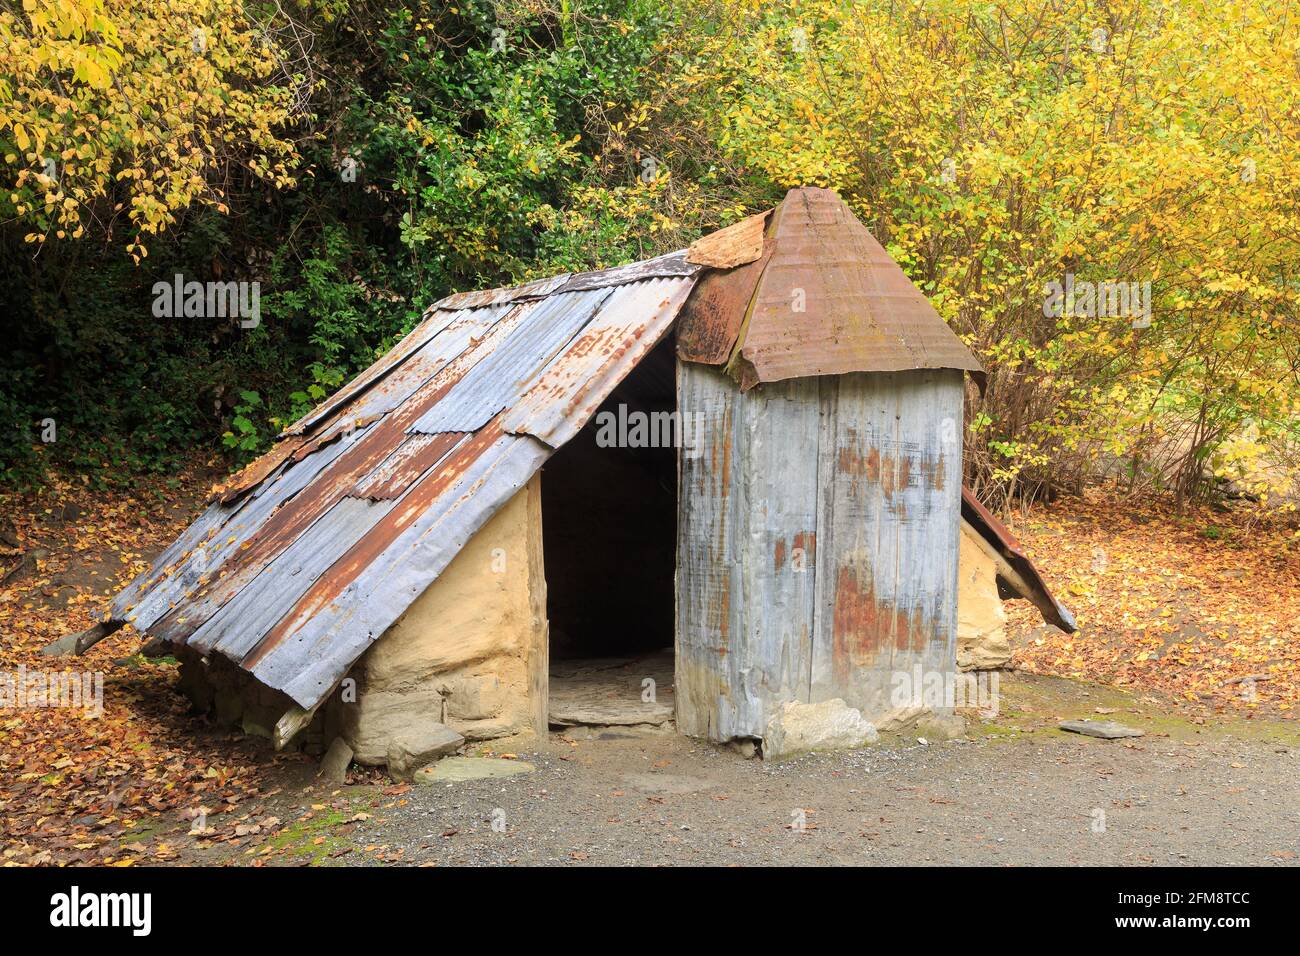 Une ancienne hutte de mineur d'or à la colonie chinoise d'Arrowtown, Arrowtown, Nouvelle-Zélande. Cette région était habitée par des mineurs d'or chinois dans les années 1880 Banque D'Images